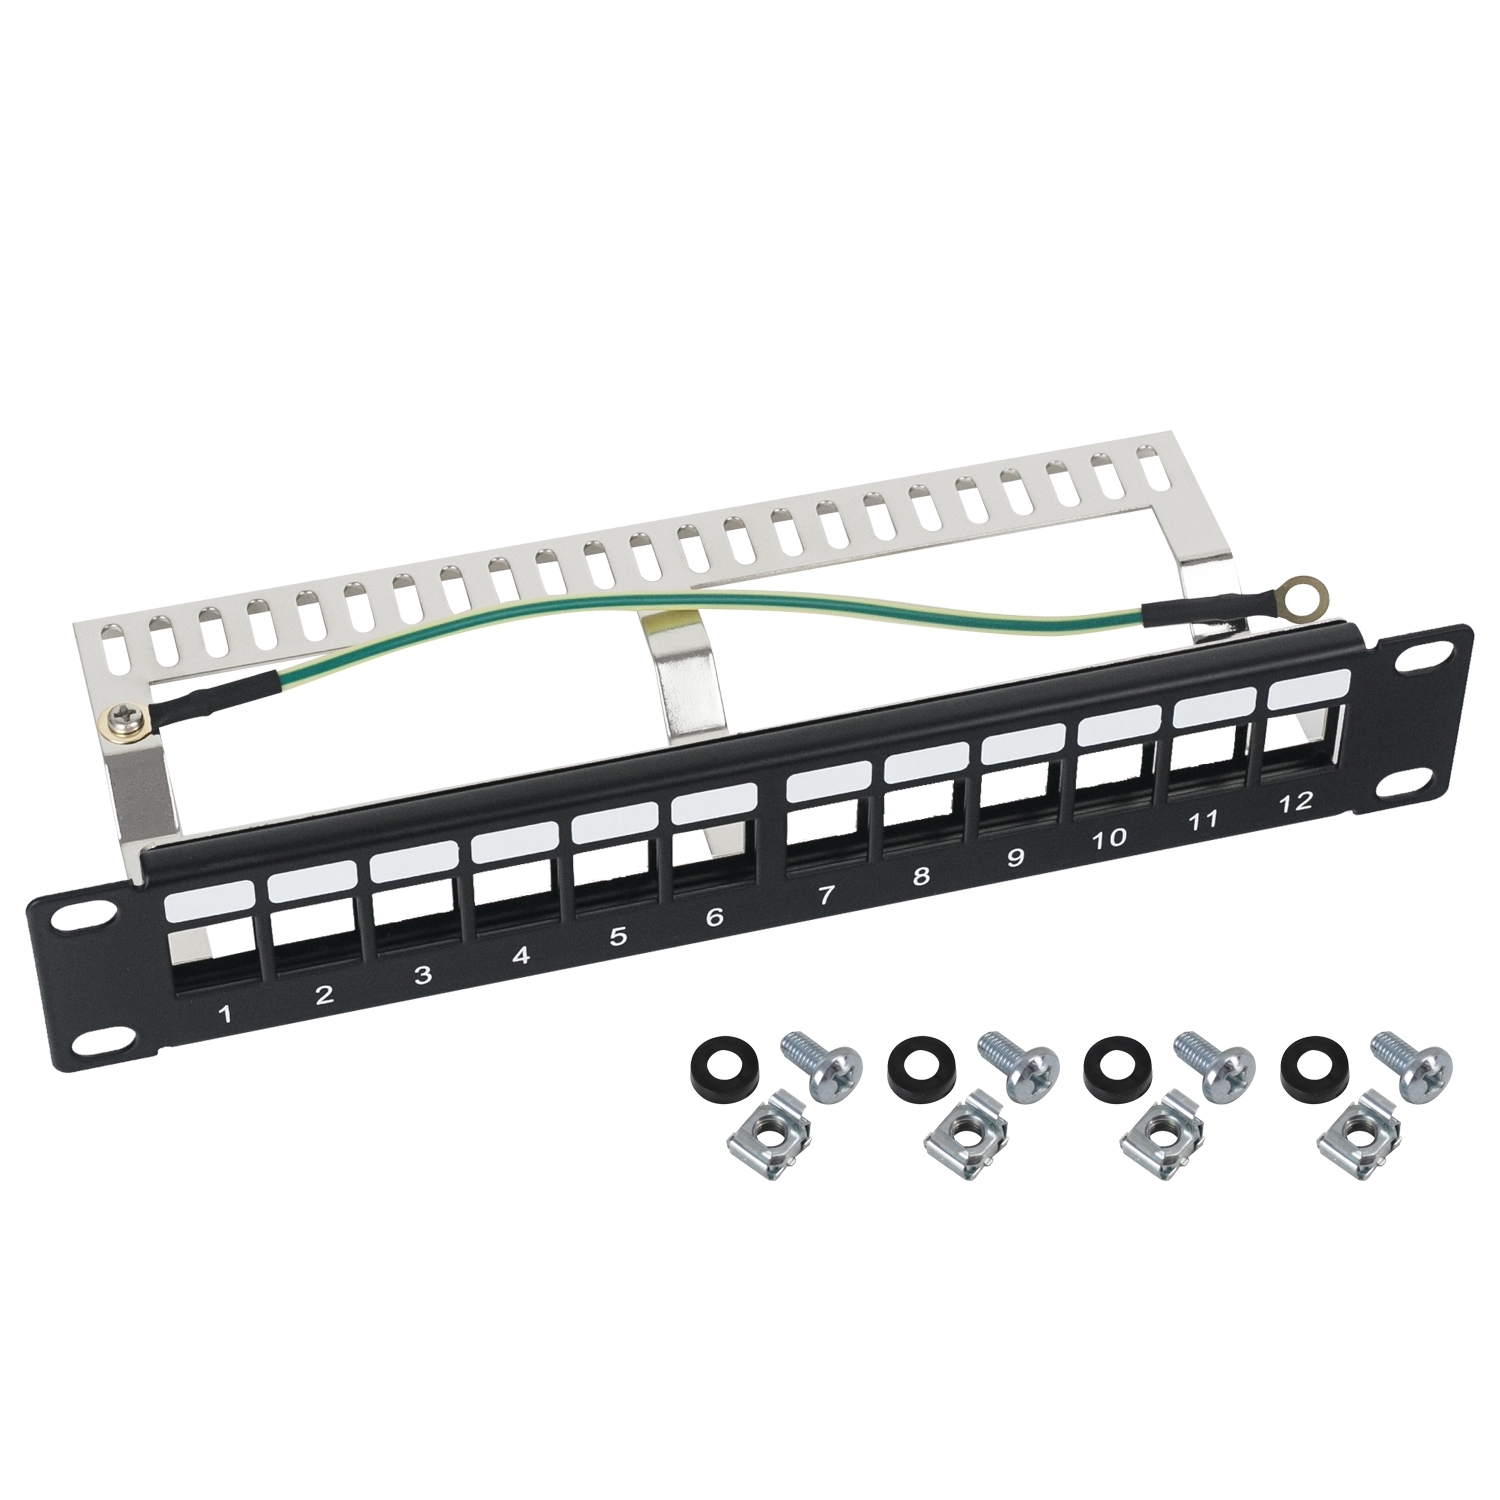 STP Keystone-Patchpanel für 10 Zoll Serverschränke von HMF mit 12 Ports RJ45 in Schwarz